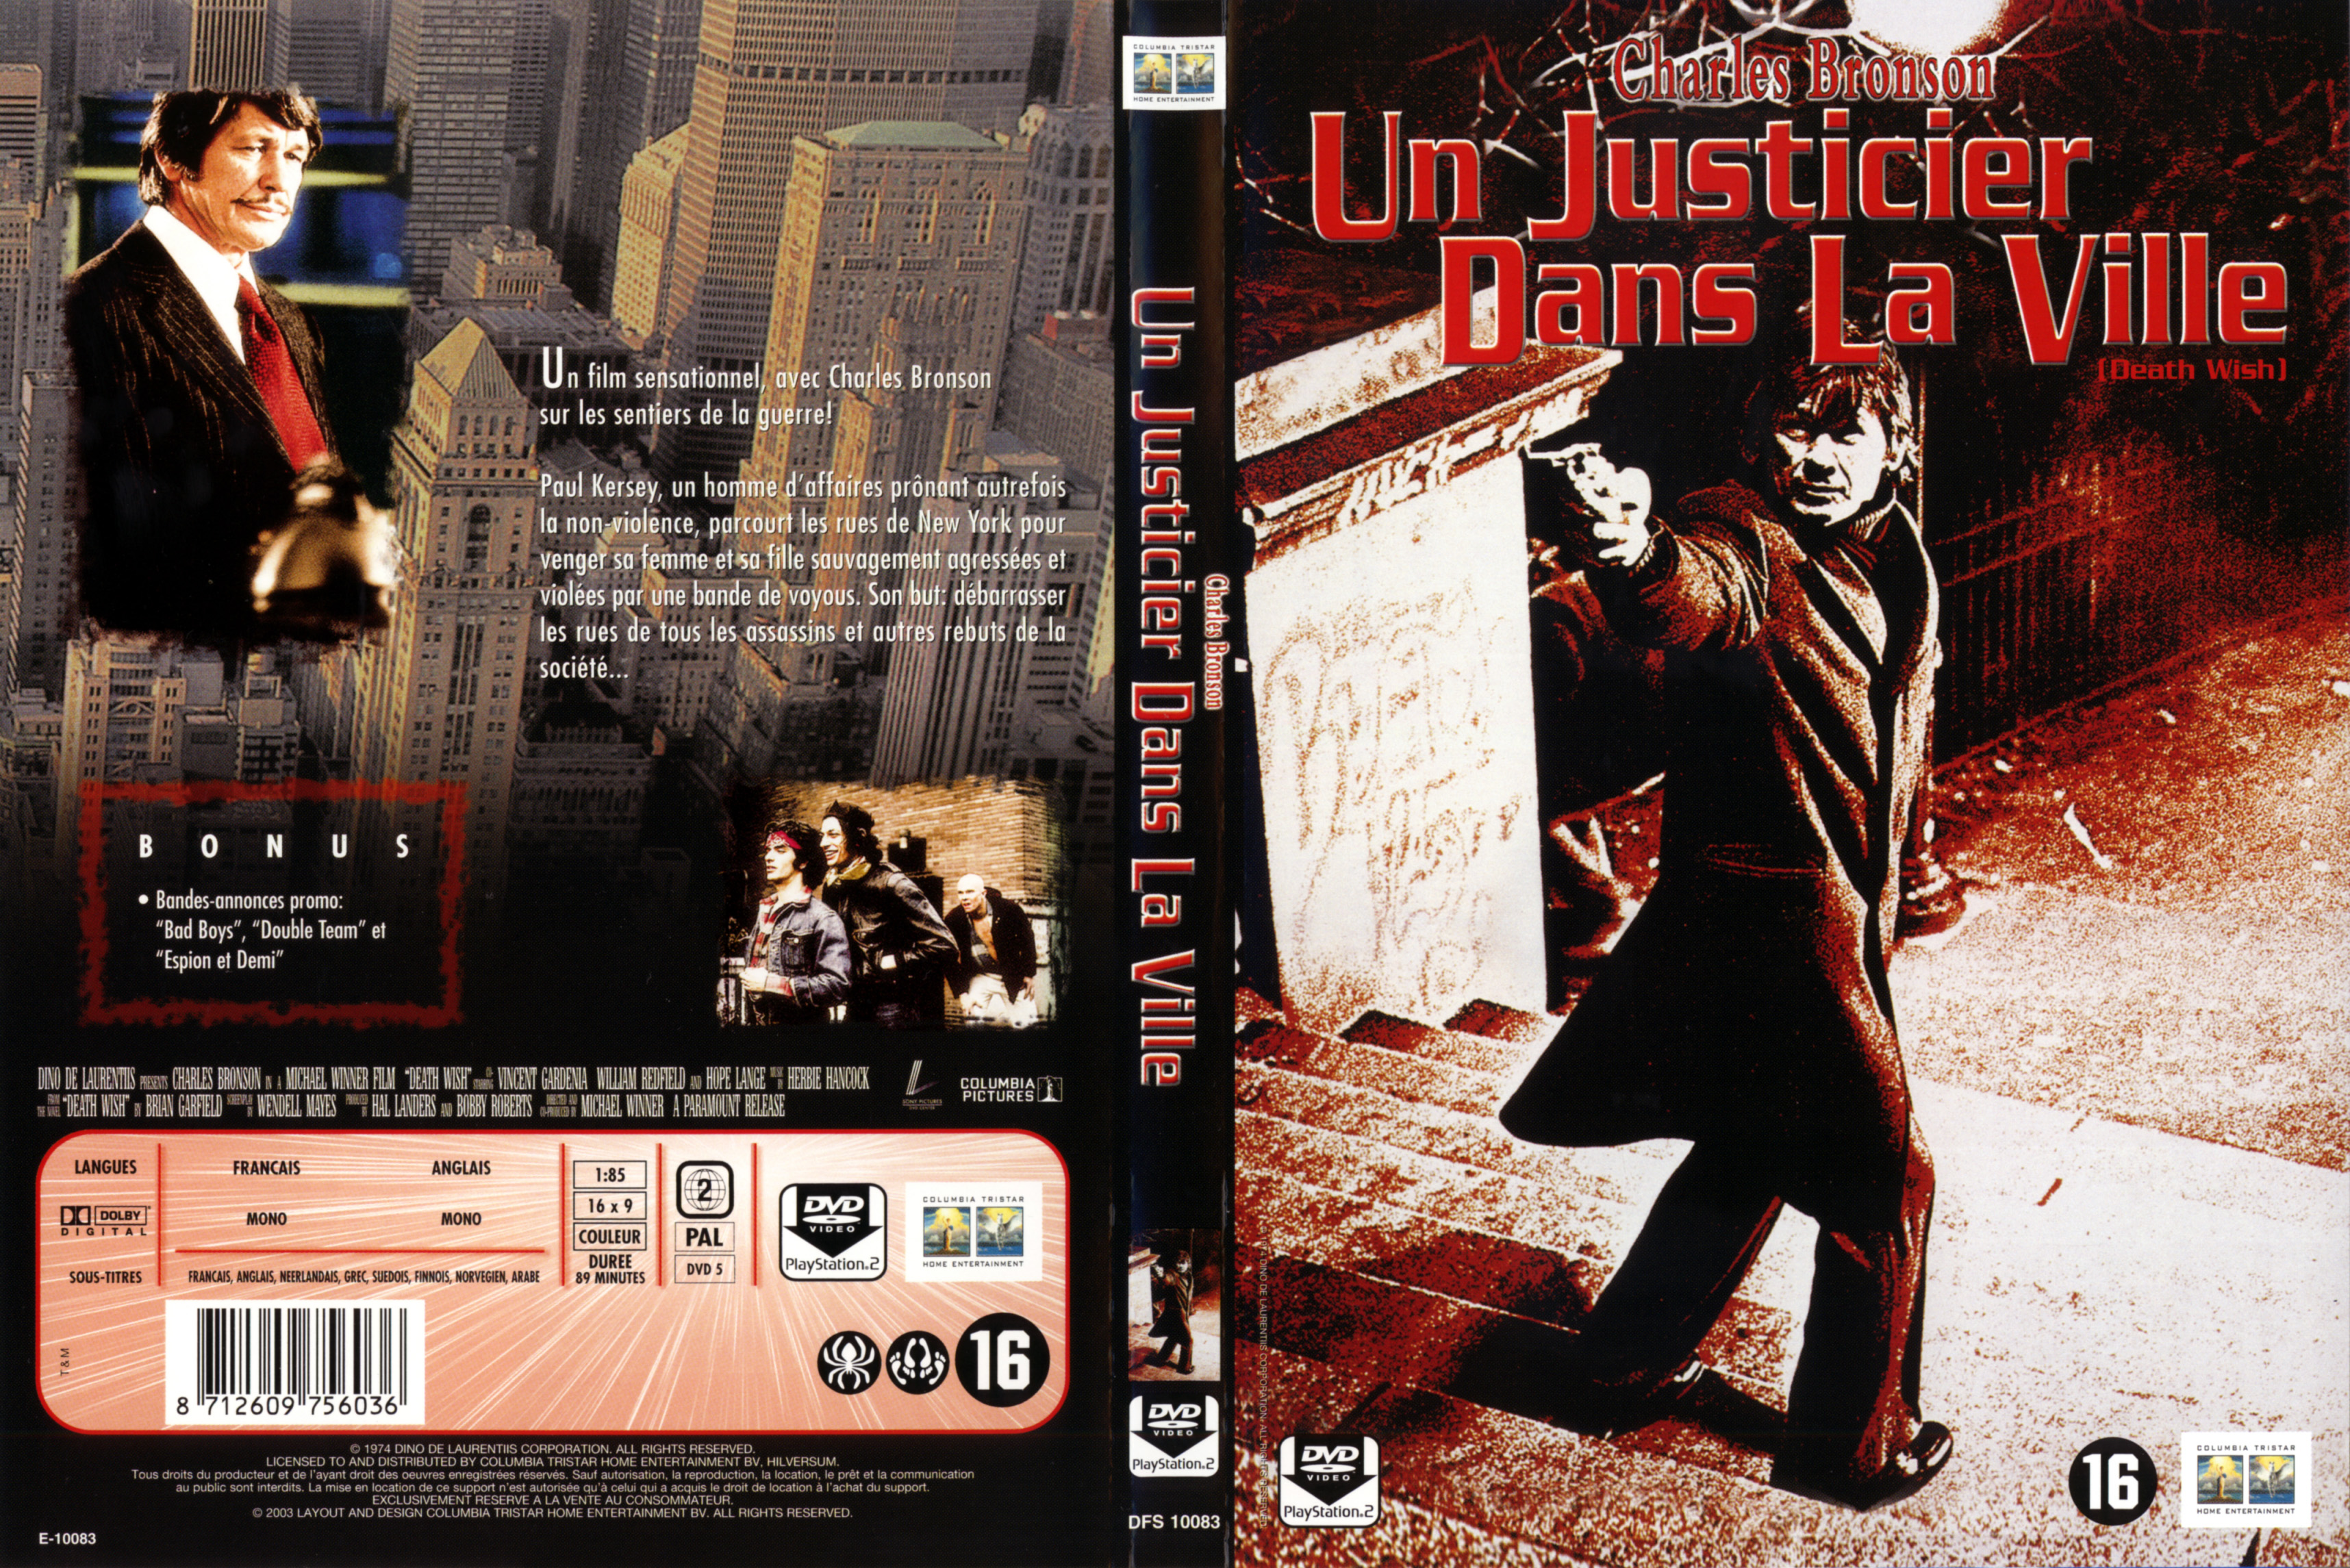 Jaquette DVD Un justicier dans la ville